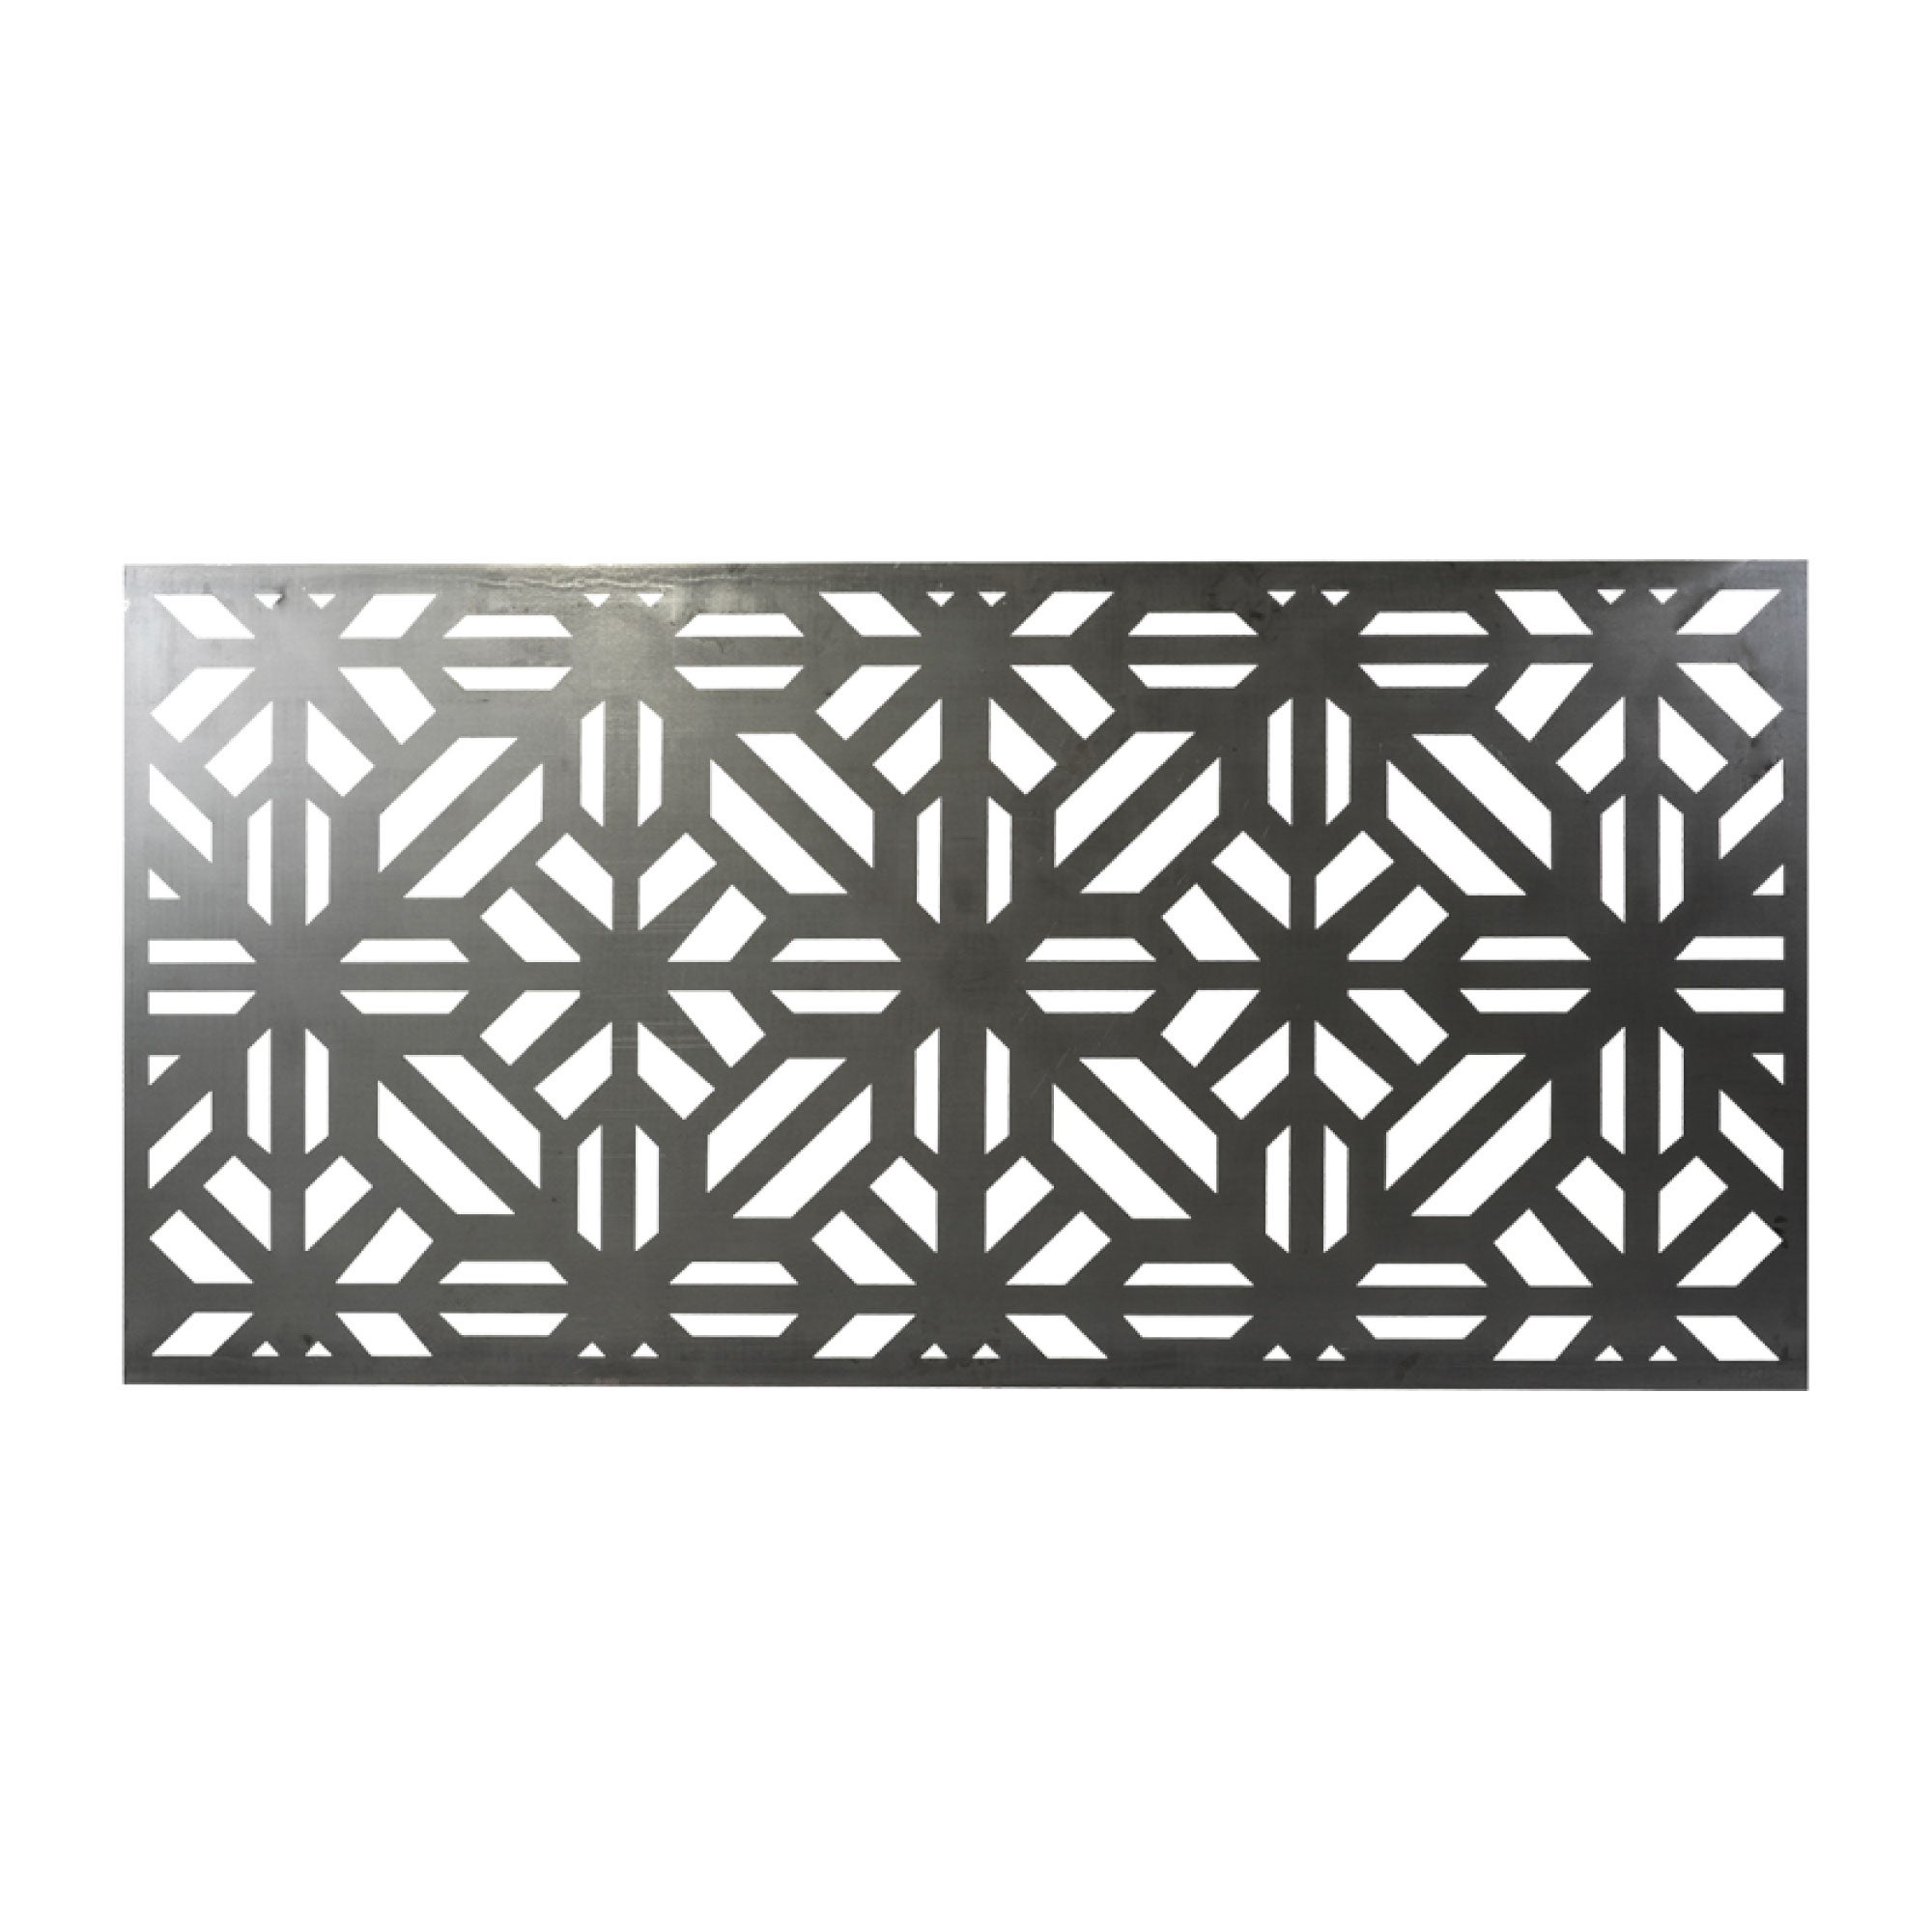 Chapa Perforada Decorativa de Hierro, Panel de Acero Negro 2x1m, Ideal  para Decoración de exteriores, Vallas, Paredes, Balcones, AceroPanel